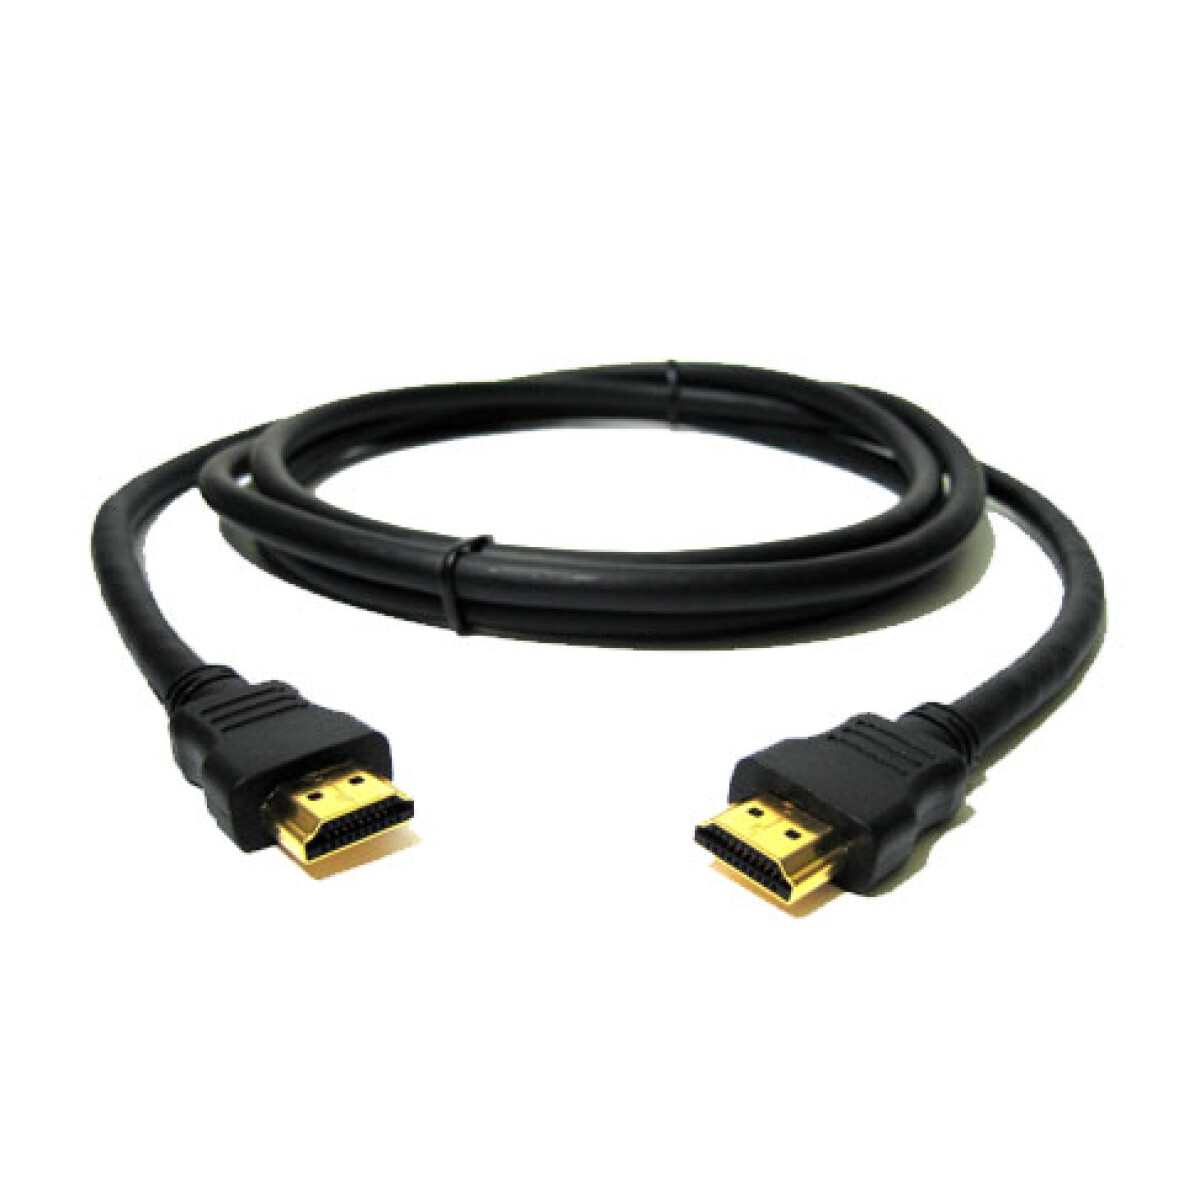 Cable HDMI a HDMI 1.5 Metros - 001 